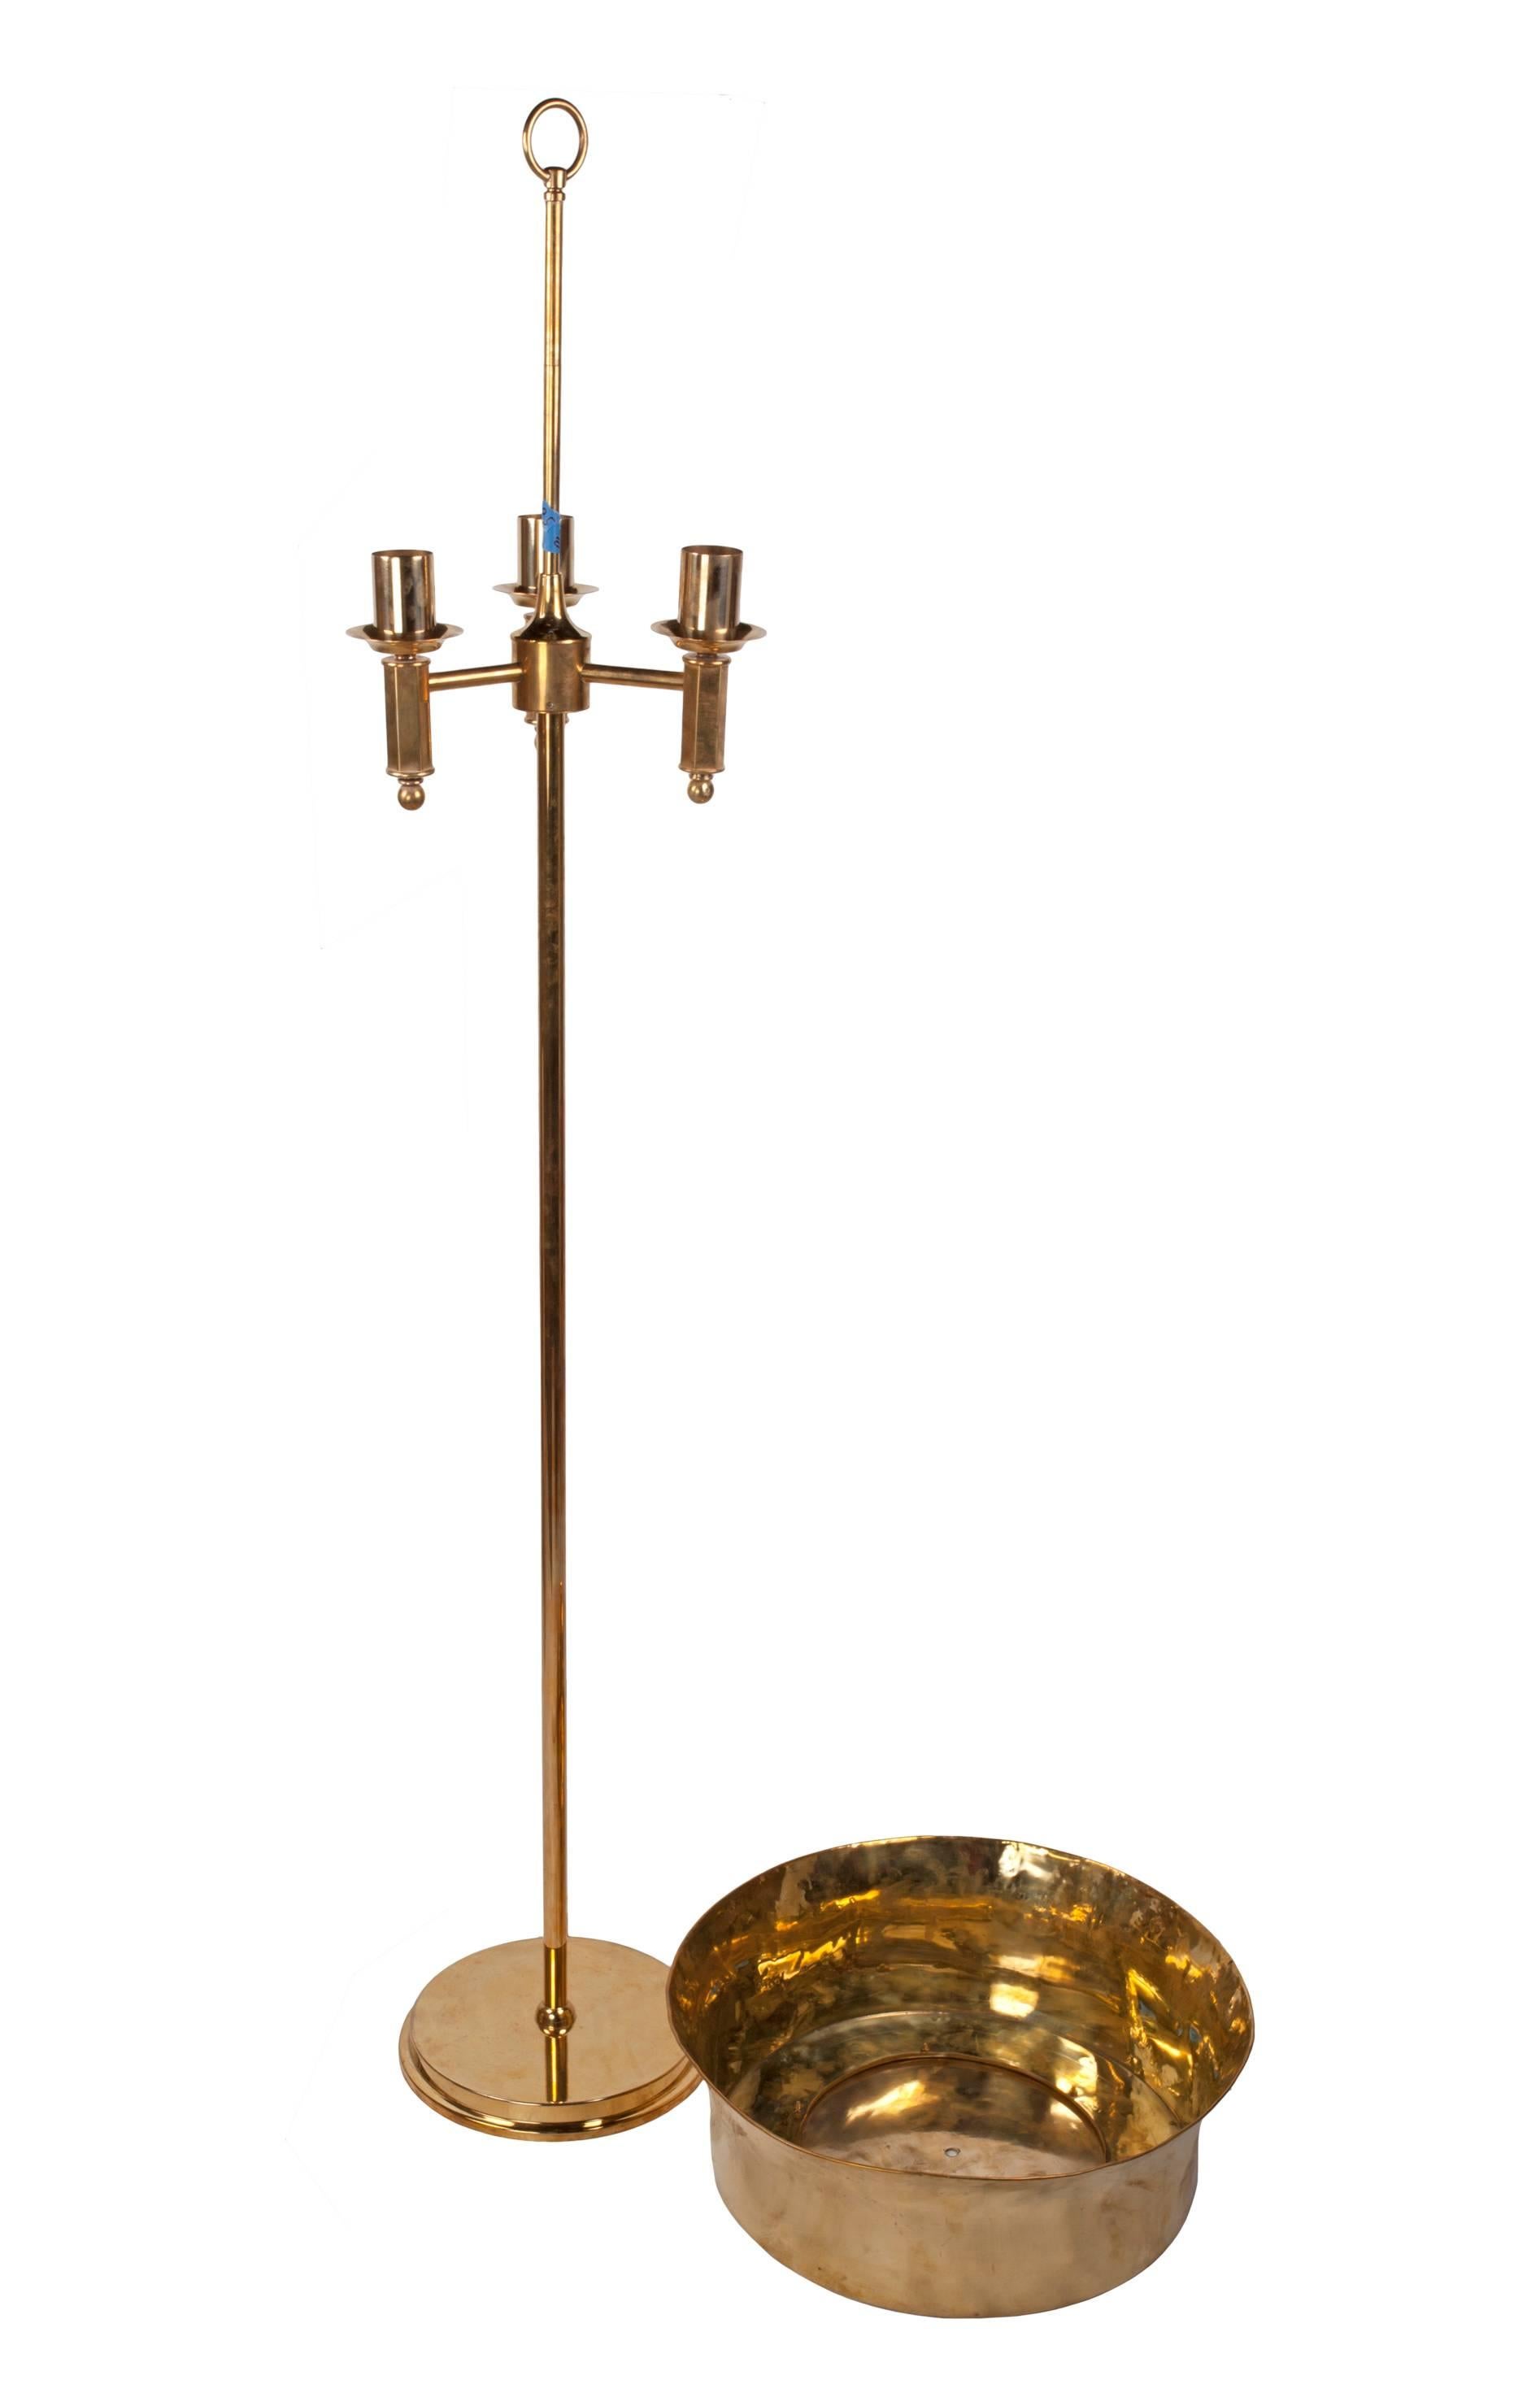 European Mid-Century Modern Brass Floor Lamp